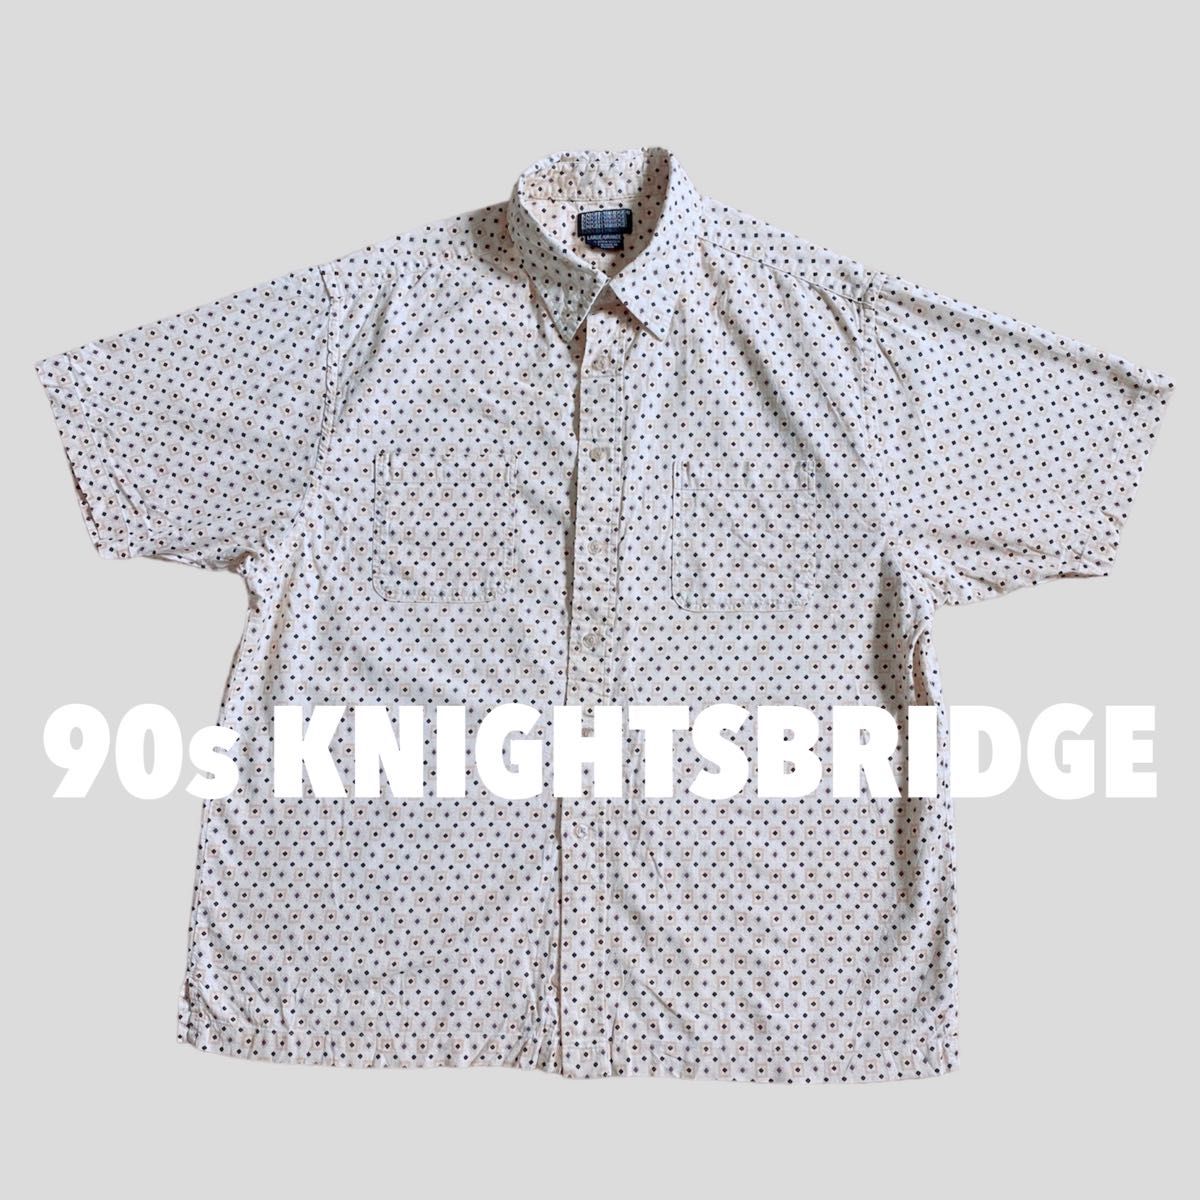 【状態◎】90s KNIGHTSBRIDGE 総柄 シャツ 古着 ビンテージ 半袖 ヴィンテージ 柄シャツ 80s 70s 